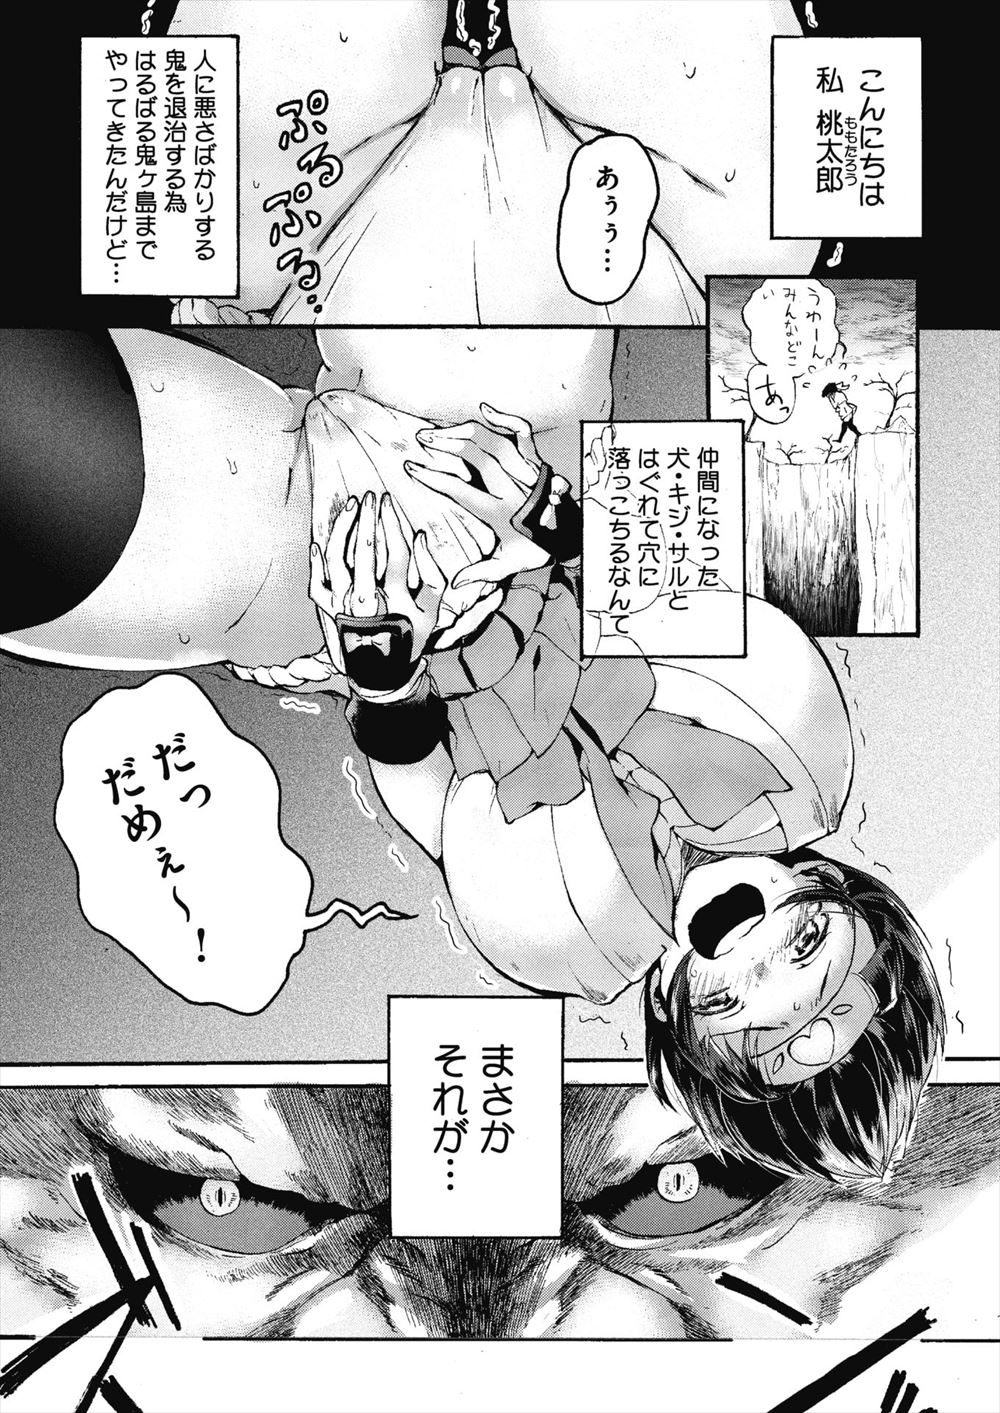 【エロ漫画】巨乳娘な桃太郎が鬼に捕まりセックスバトル。おっぱいを見られてふんどしマンコを犯されて、極太鬼チンコにパイパン処女マンコを犯されてしまいおチンポの虜になる